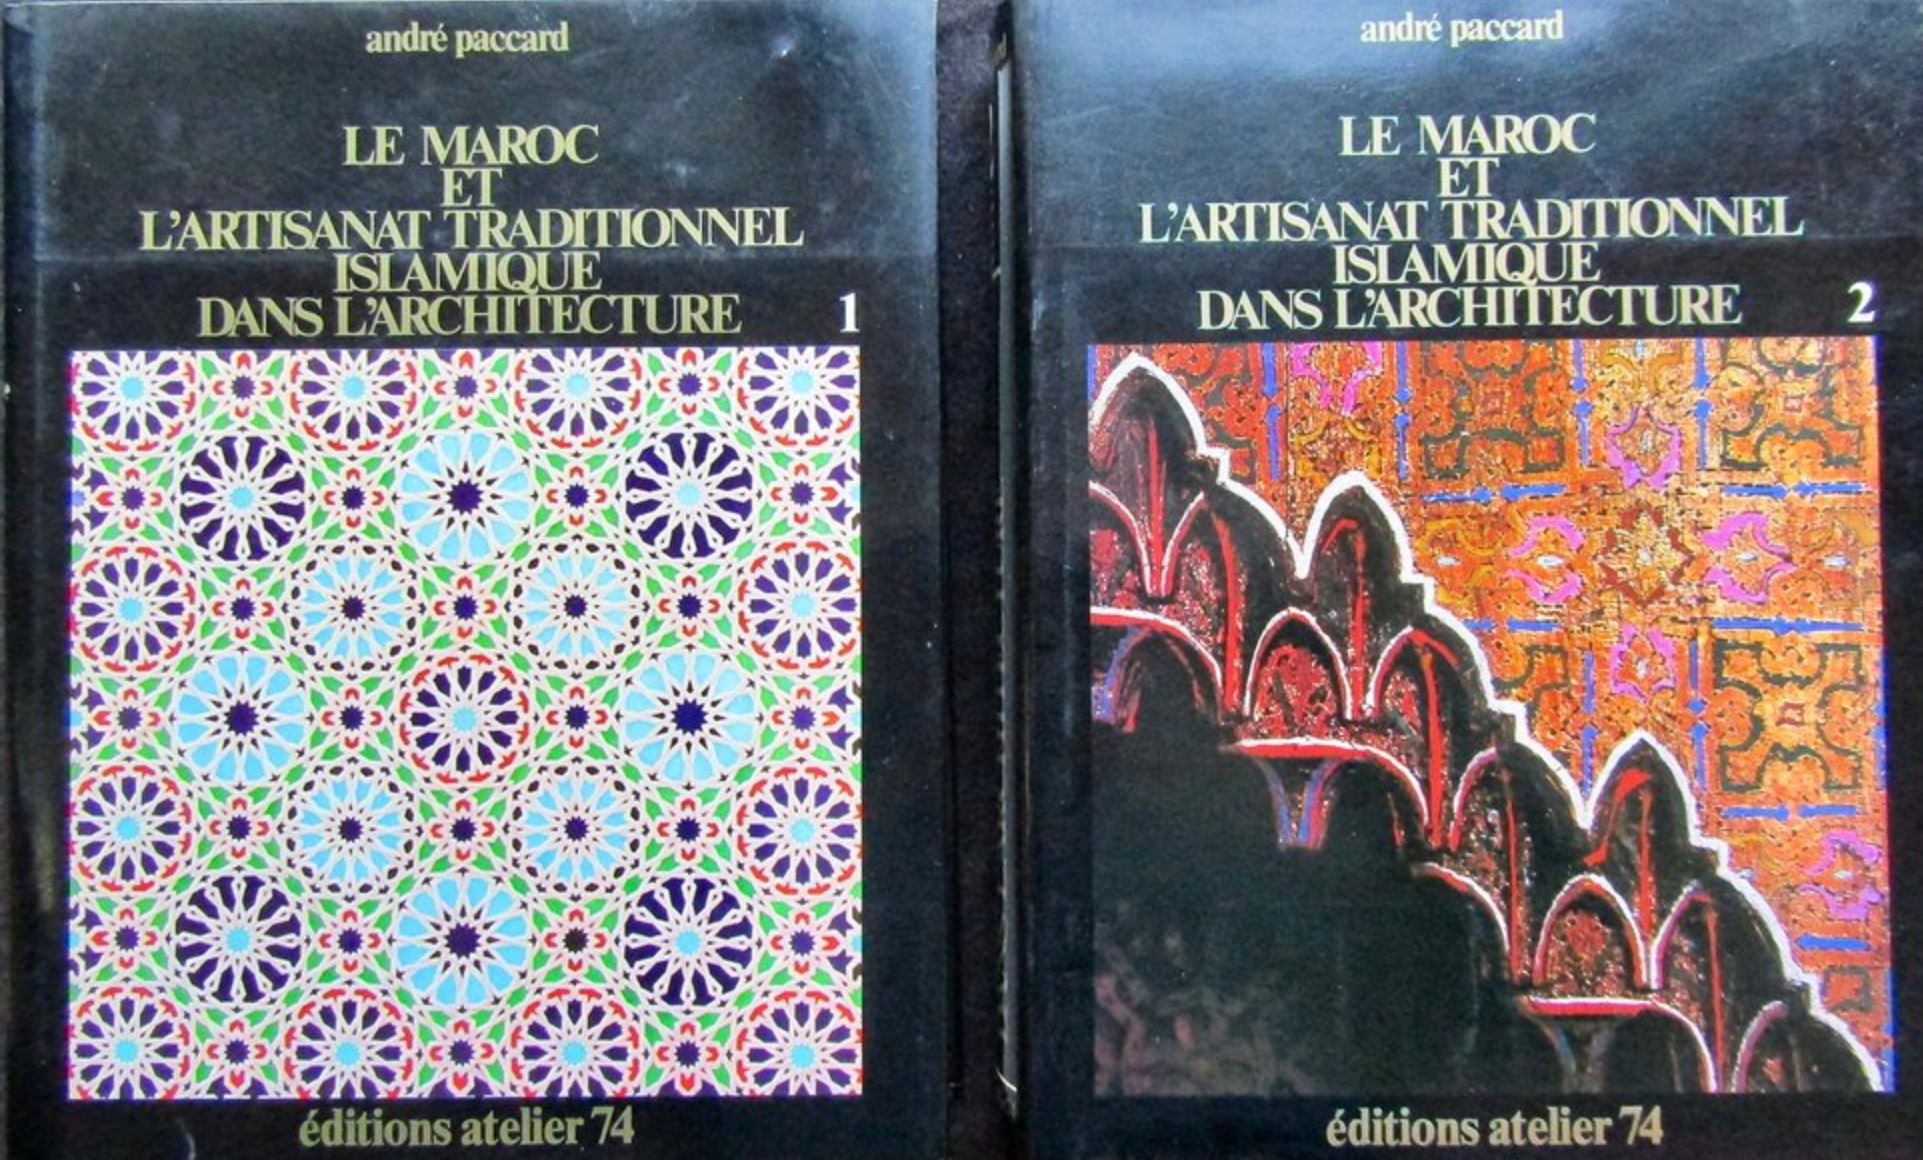 André Paccard - Le Maroc et l'Artisanat traditionnel